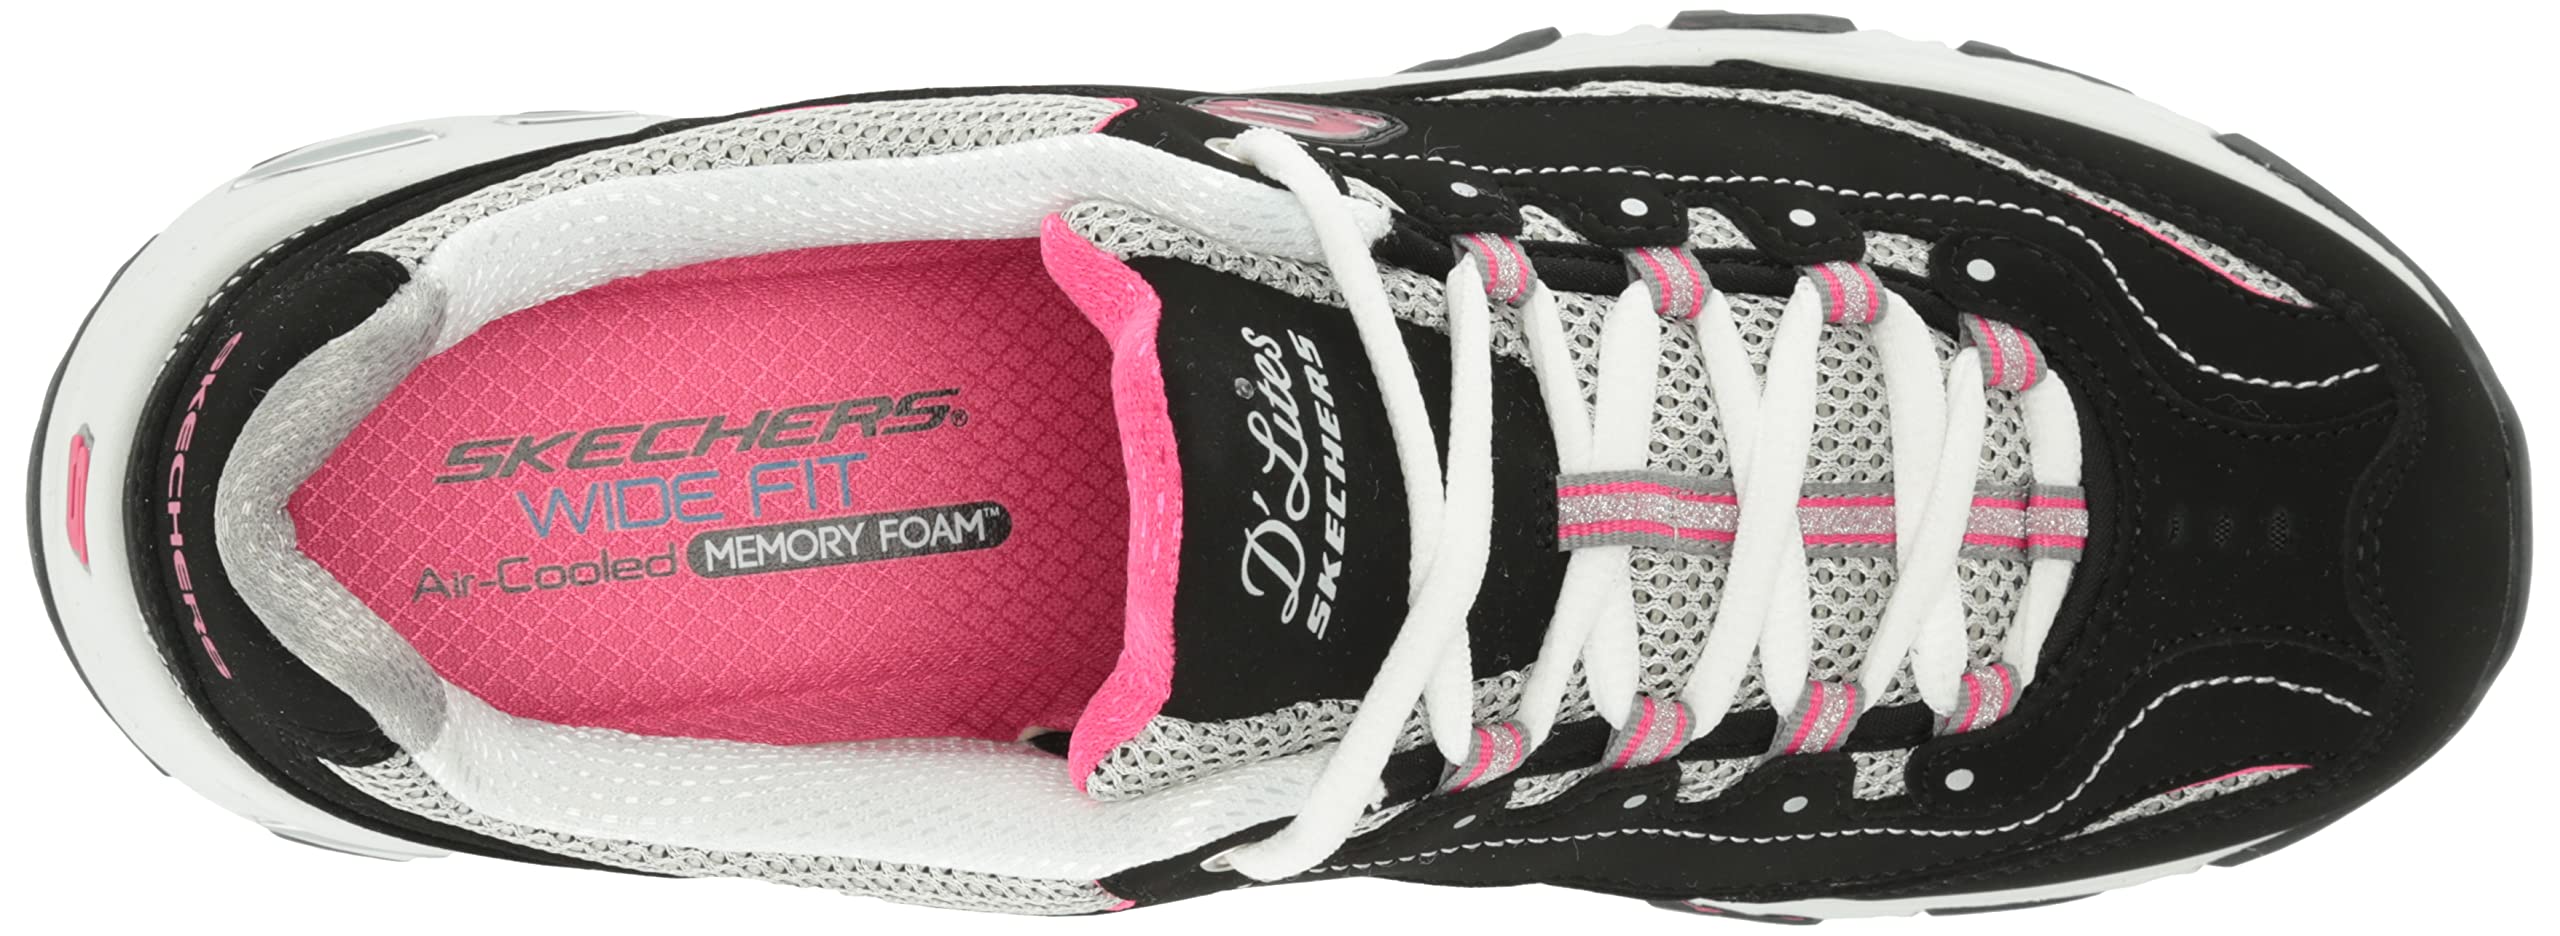 Skechers Women's D'Lites-Life Saver Memory Foam Lace-up Sneaker